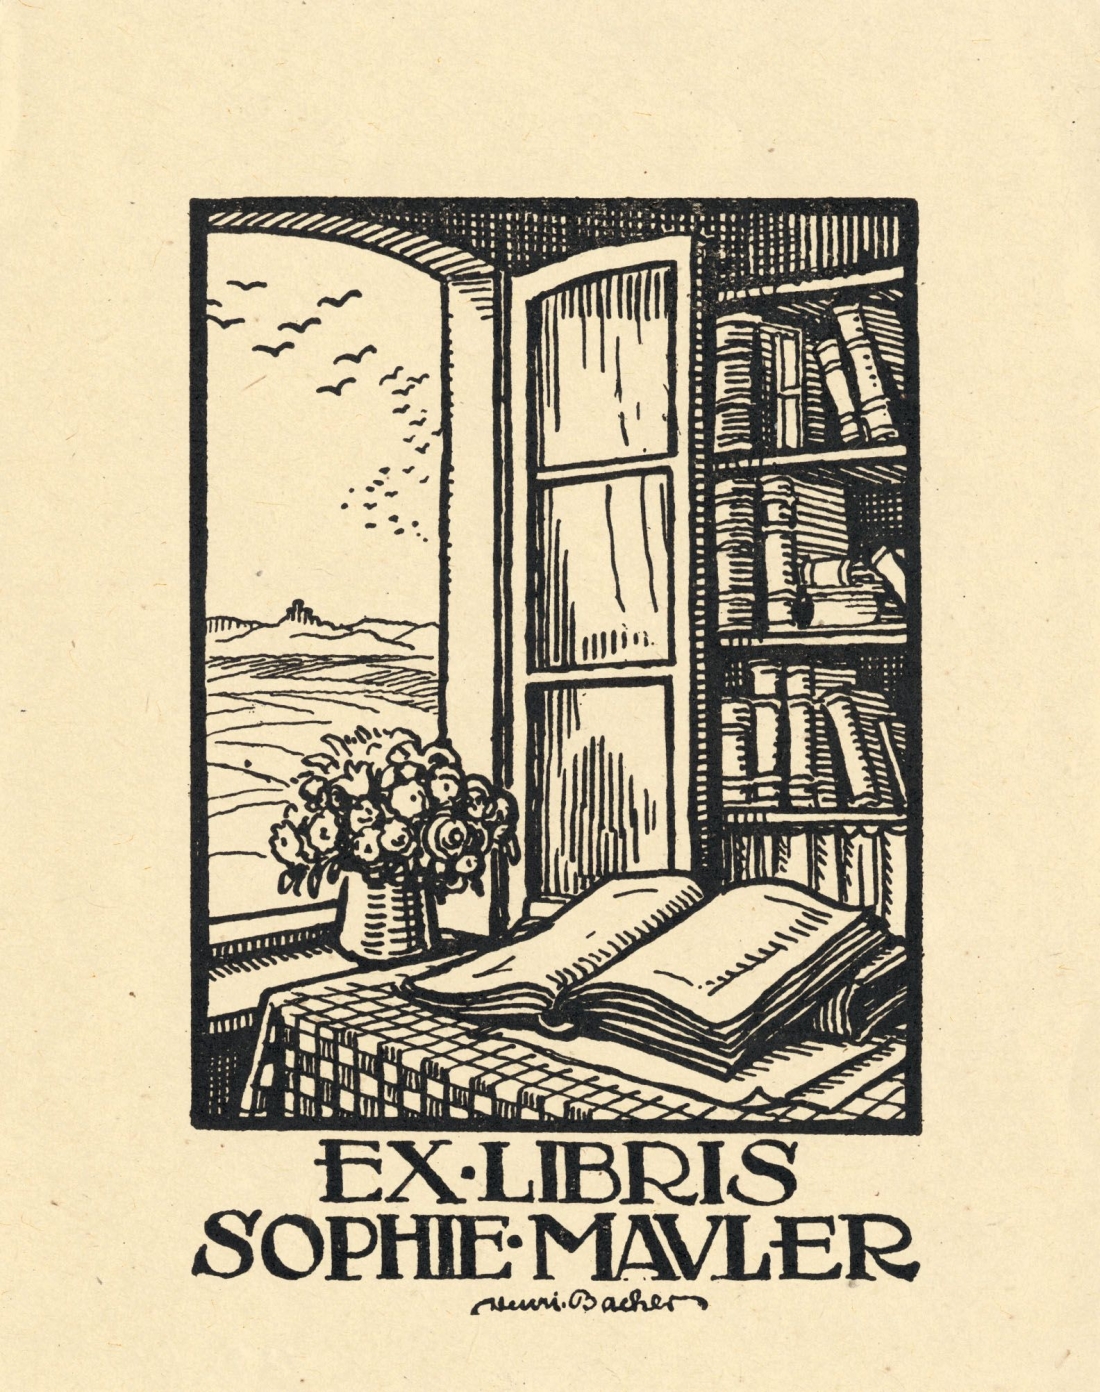 Εx Libris άγνωστου καλλιτέχνη, για τη βιβλιοθήκη της Sophie Mavler.  Tα Ex Libris (που στα λατινικά σημαίνει: από το βιβλίο του, από τη βιβλιoθήκη του), απεικονίζουν το έμβλημα του κατόχου του βιβλίου και η πρακτική χρησιμότητά τους είναι να περιορίζεται το ενδεχόμενο κλοπής ή απώλειάς του, με την επικόλλησή τους (ή το σφράγισμά τους), συνήθως στην πίσω όψη του εξωφύλλου του βιβλίου.  